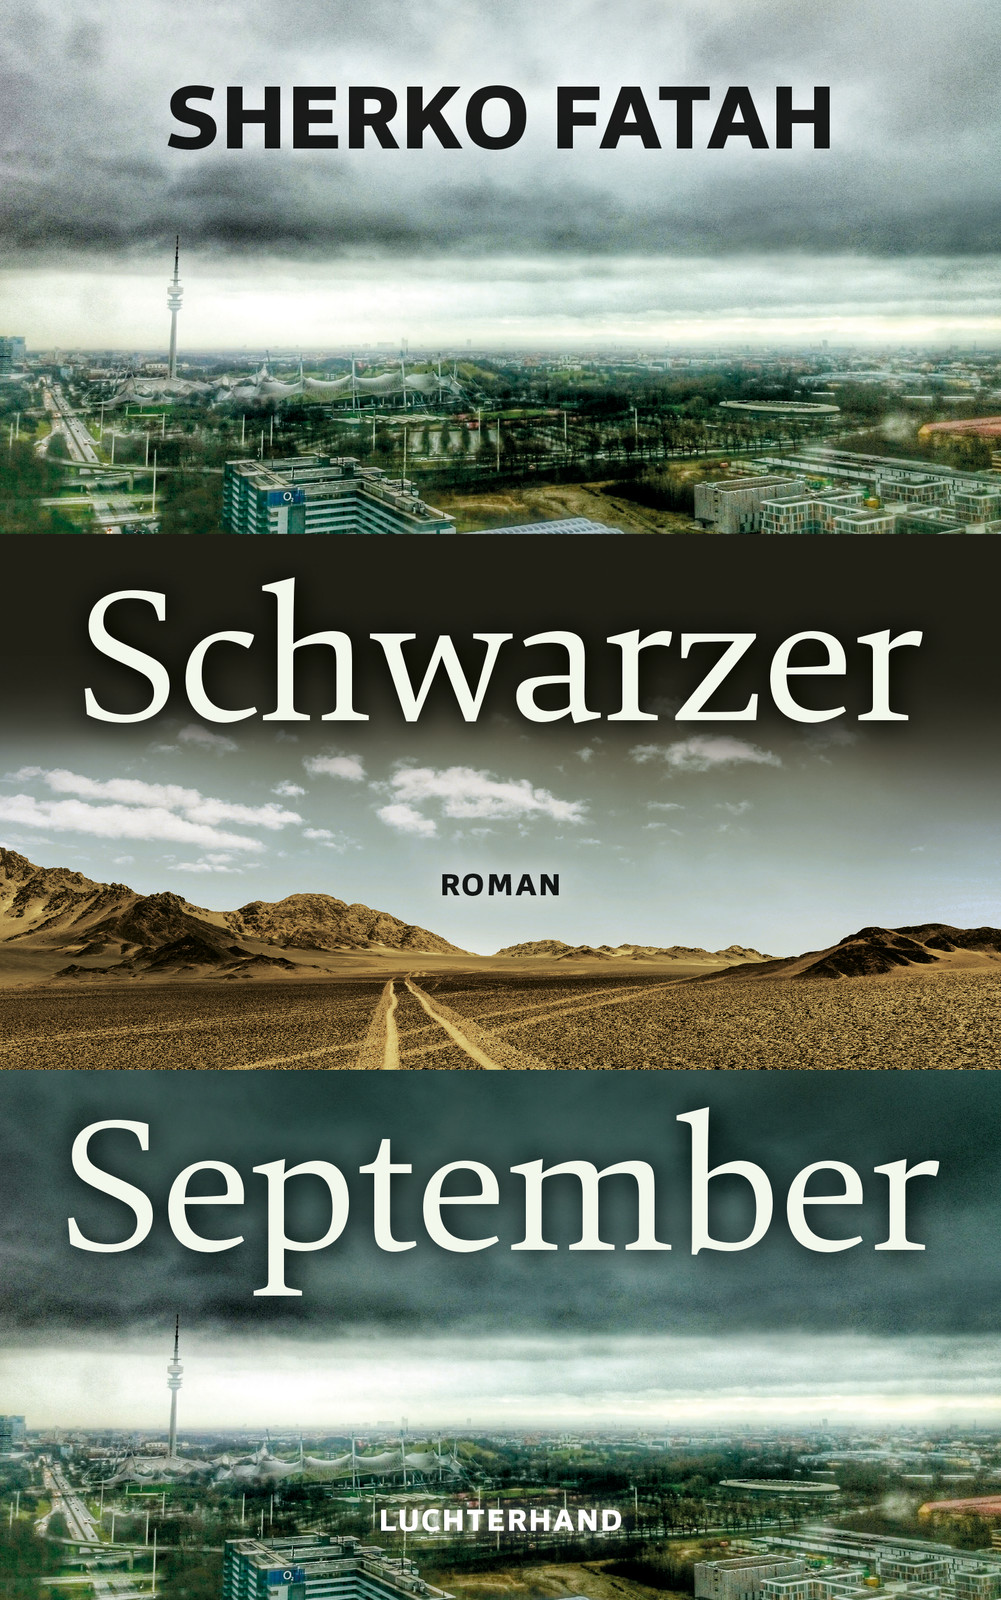 Cover of Sherko Fatah's "Schwarzer September" – Black September (published in German by Luchterhand)